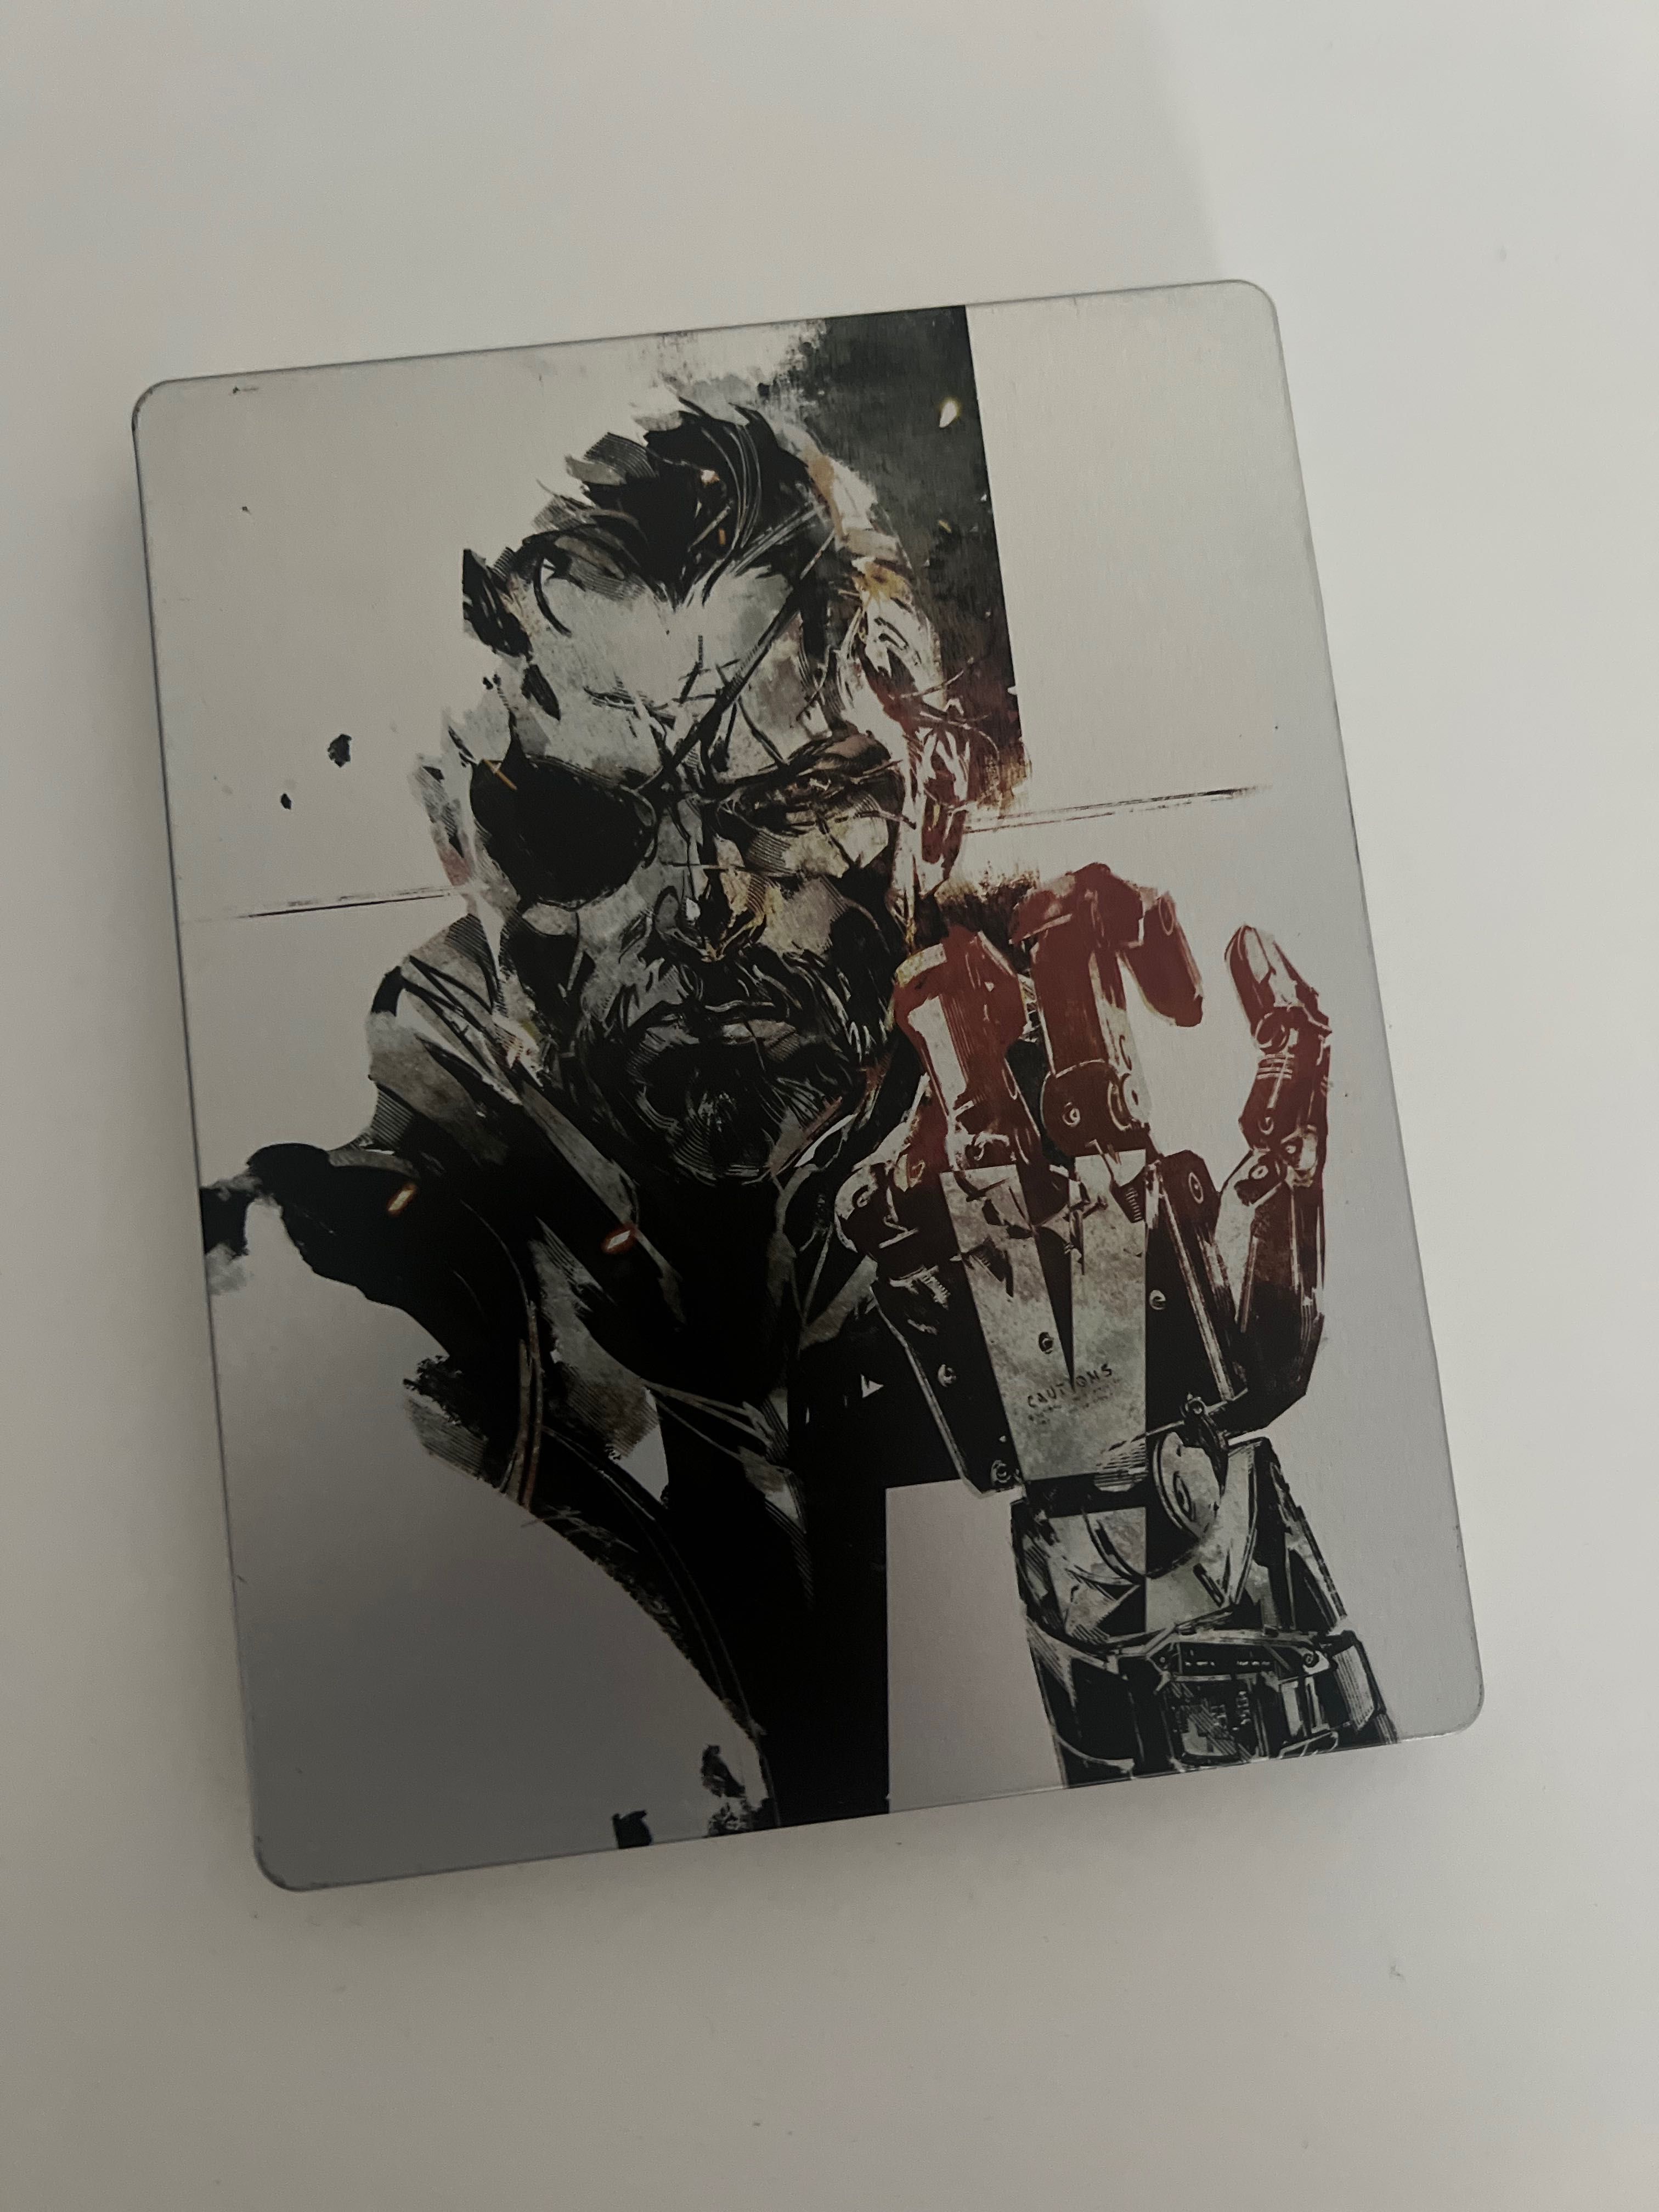 Metal Gear Solid V The Phantom Pain steelbook